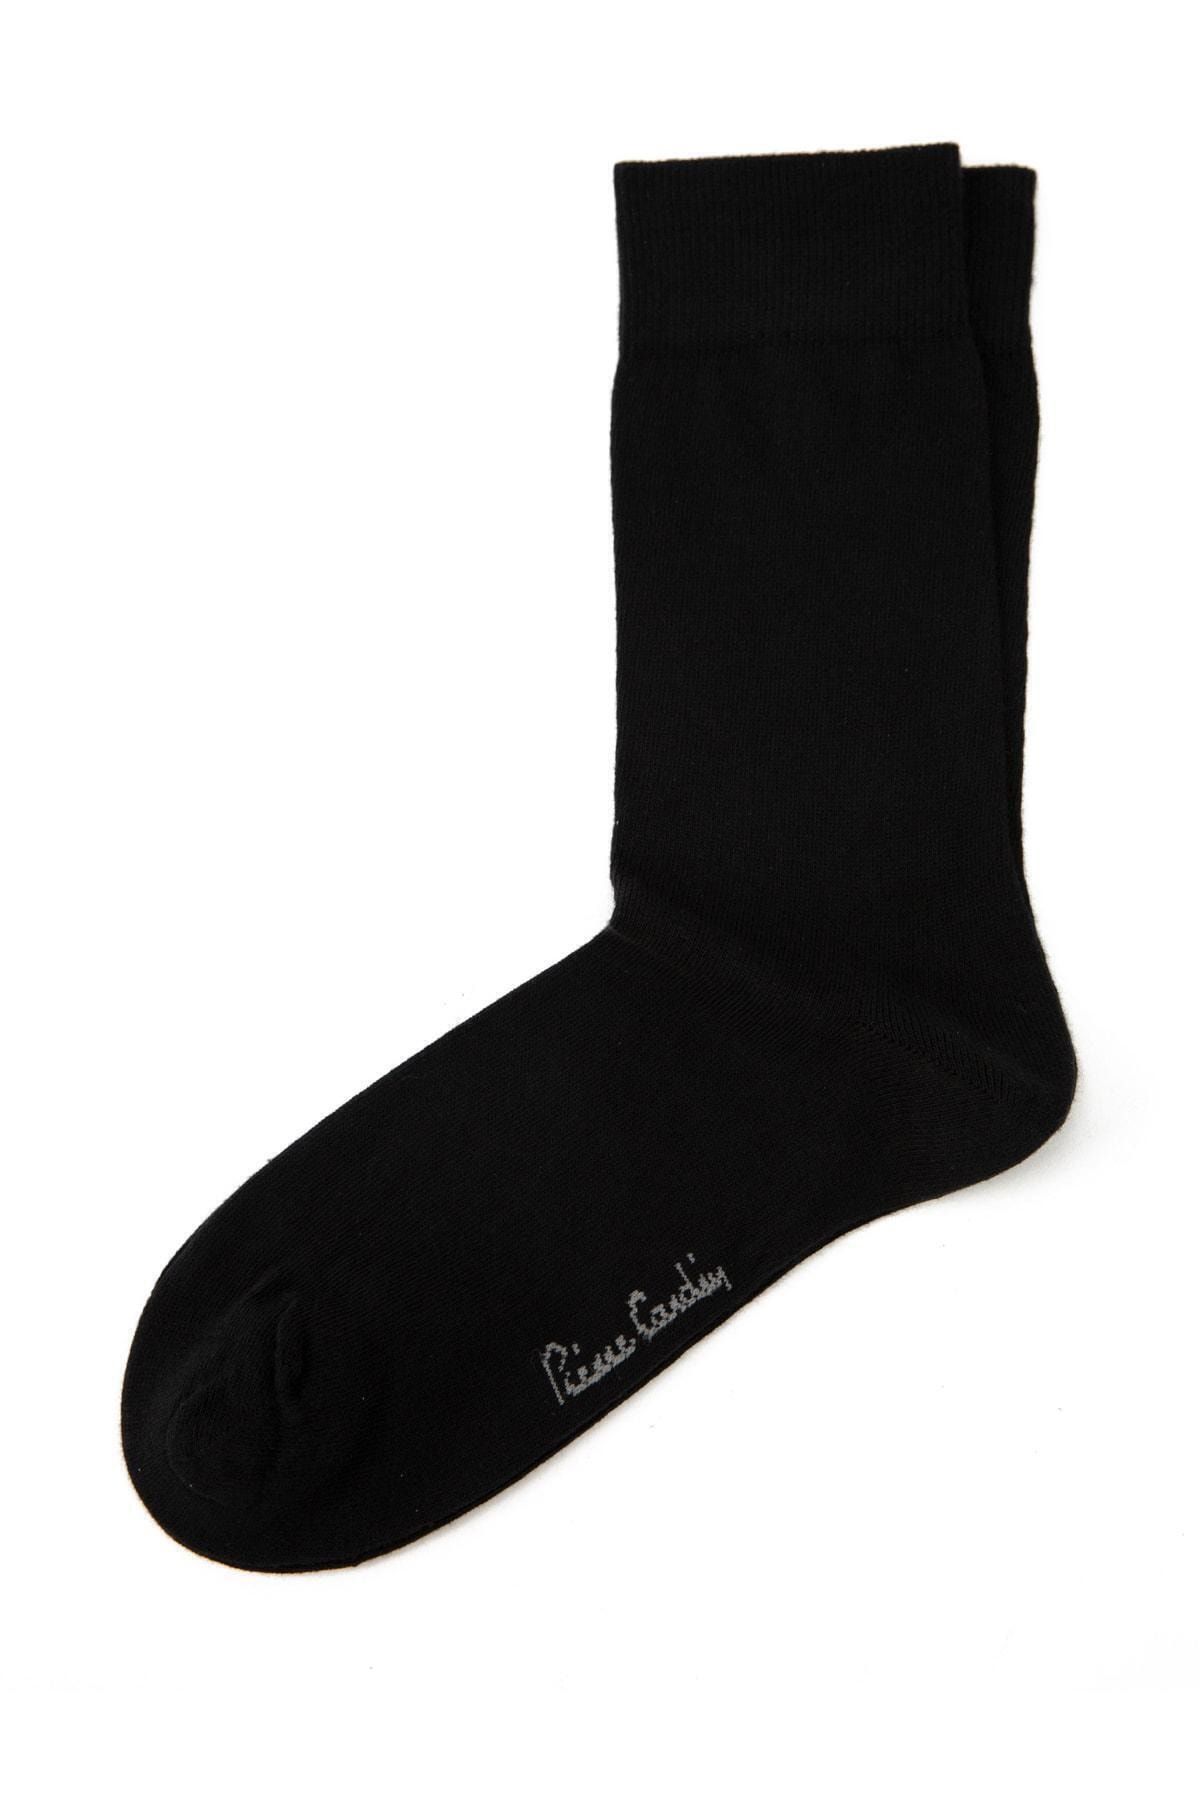 Pierre Cardin 6lı Paket Erkek Çorap 40-44 Numara Cp20-300f